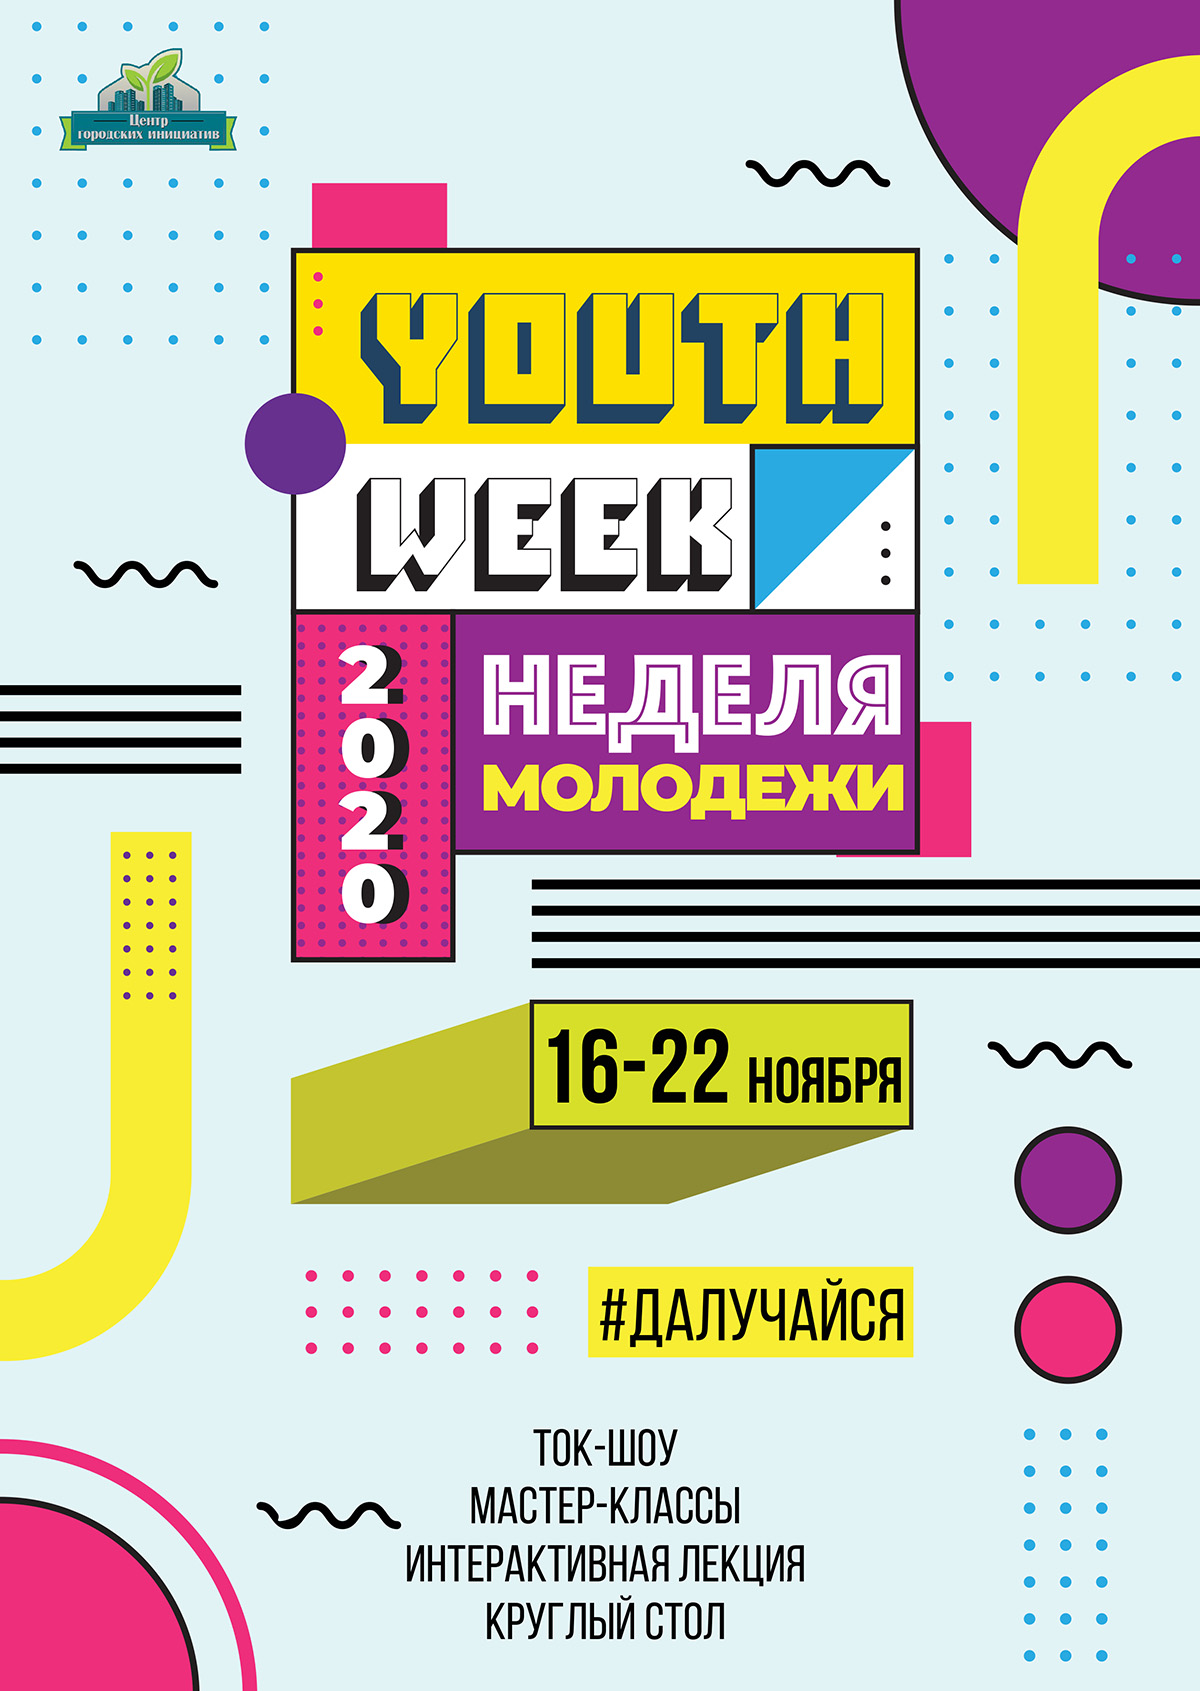 Неделя молодежи пройдет в Могилеве с 16 по 22 ноября